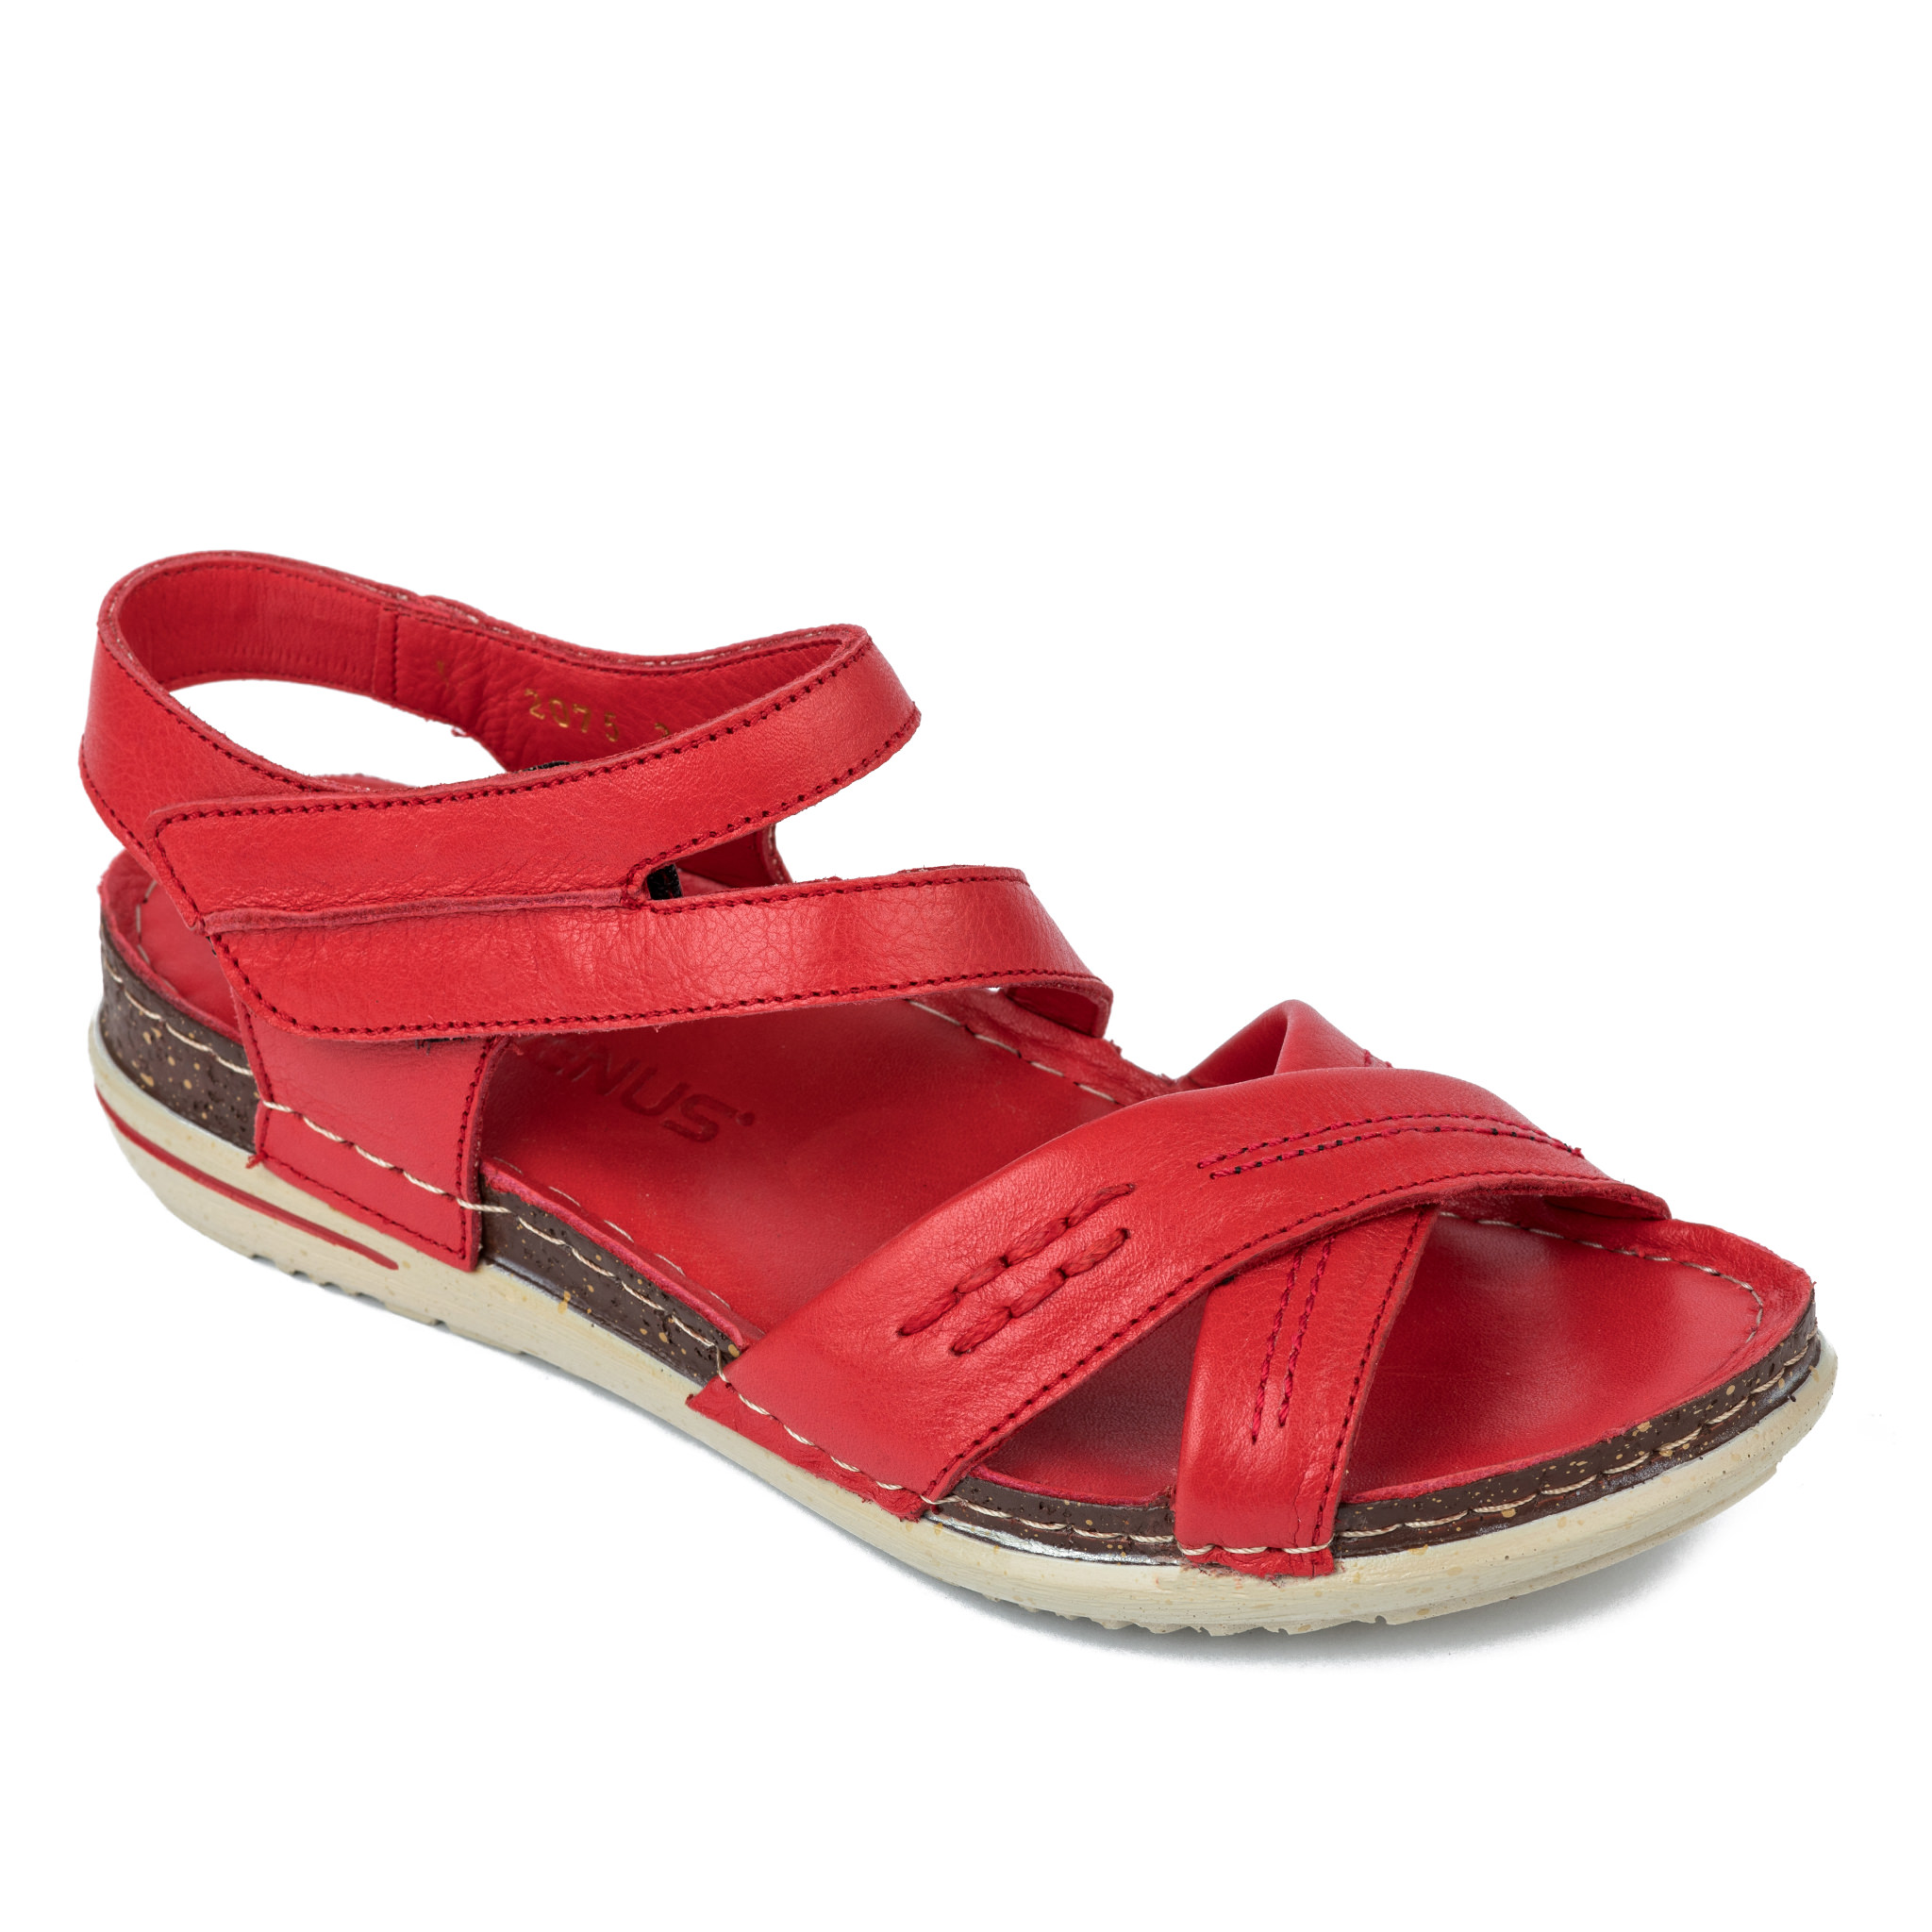 Women sandals A192 - RED